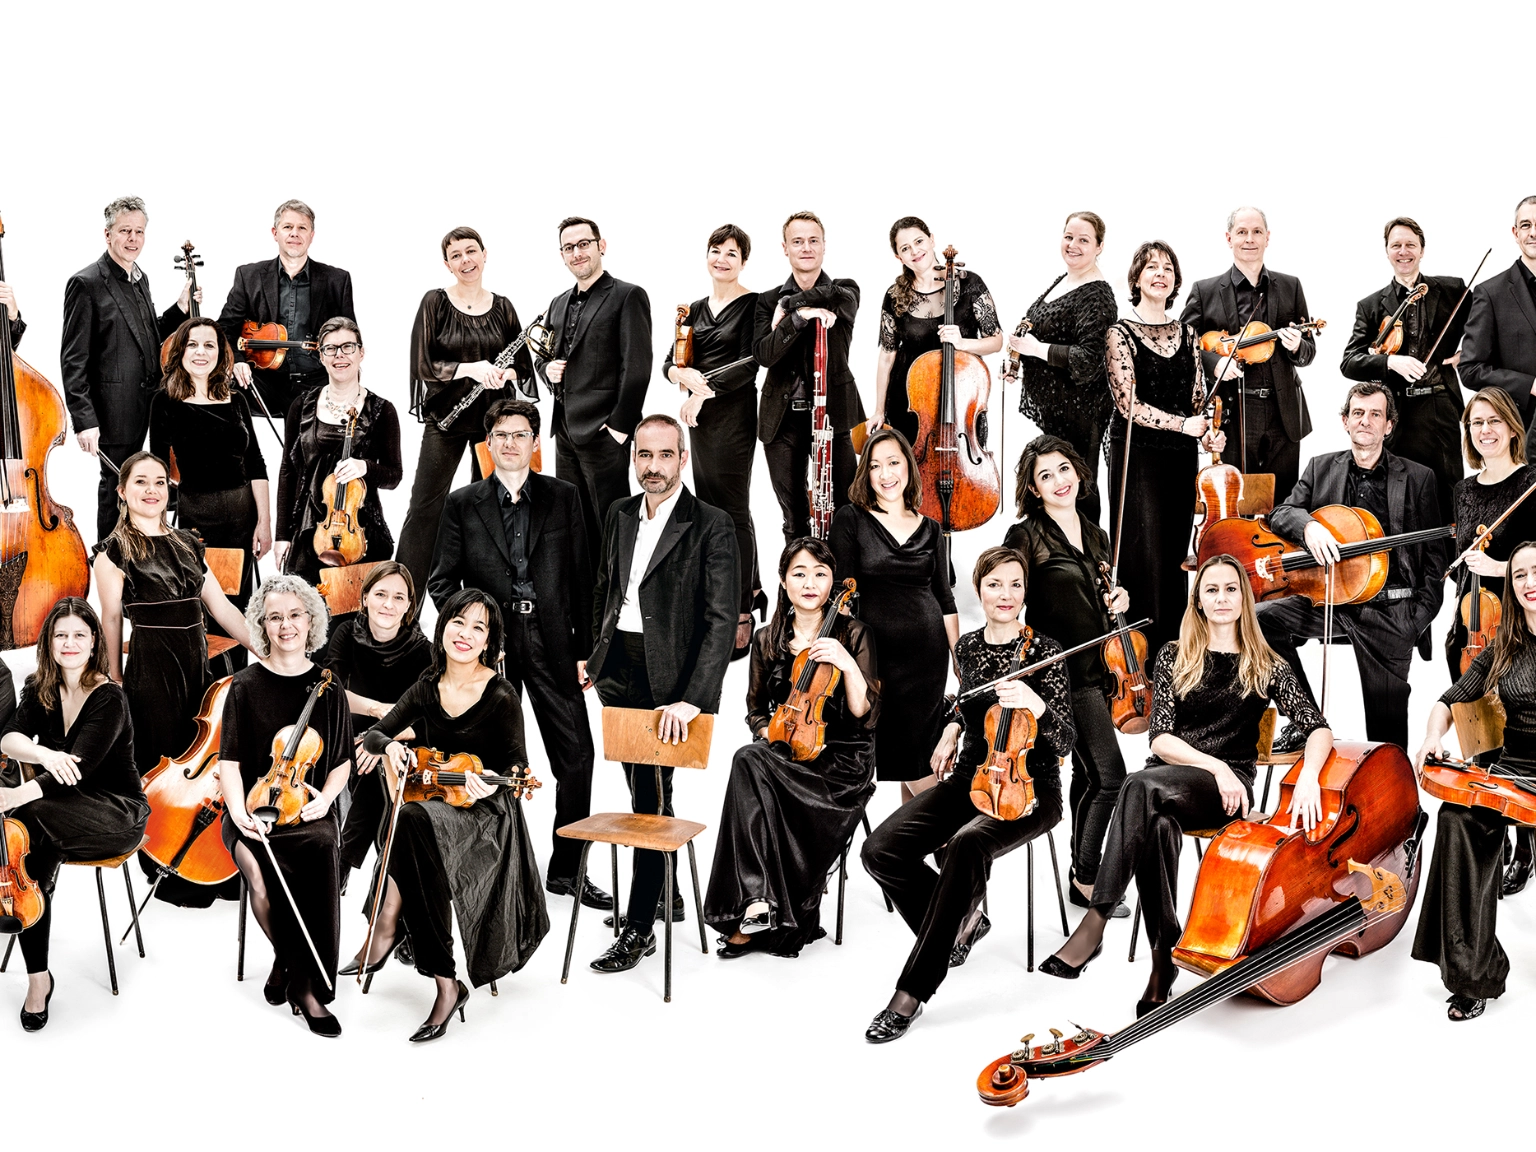 Orchesterbild der Kammerakademie Potsdam. Die Musiker*innen sind mit ihren Instrumenten abgebildet. Der umgebende Raum ist komplett weiß.